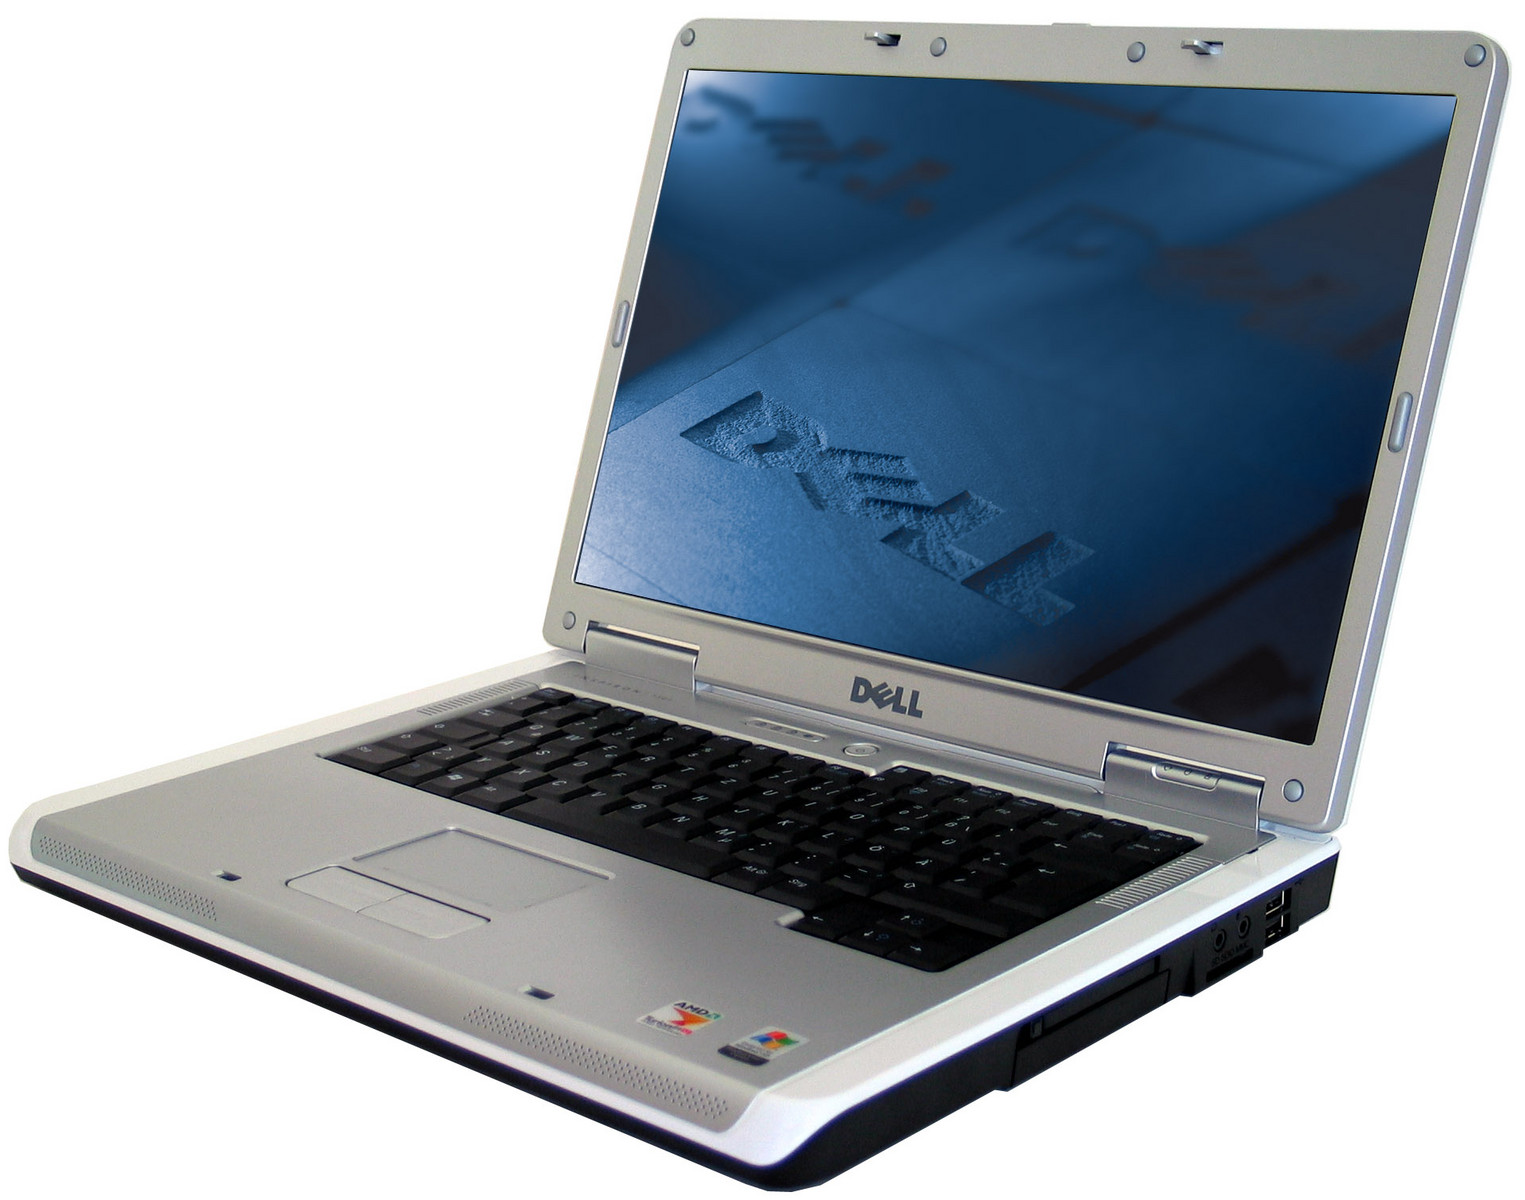 Dell Inspiron 1501 - Notebookcheck.net External Reviews